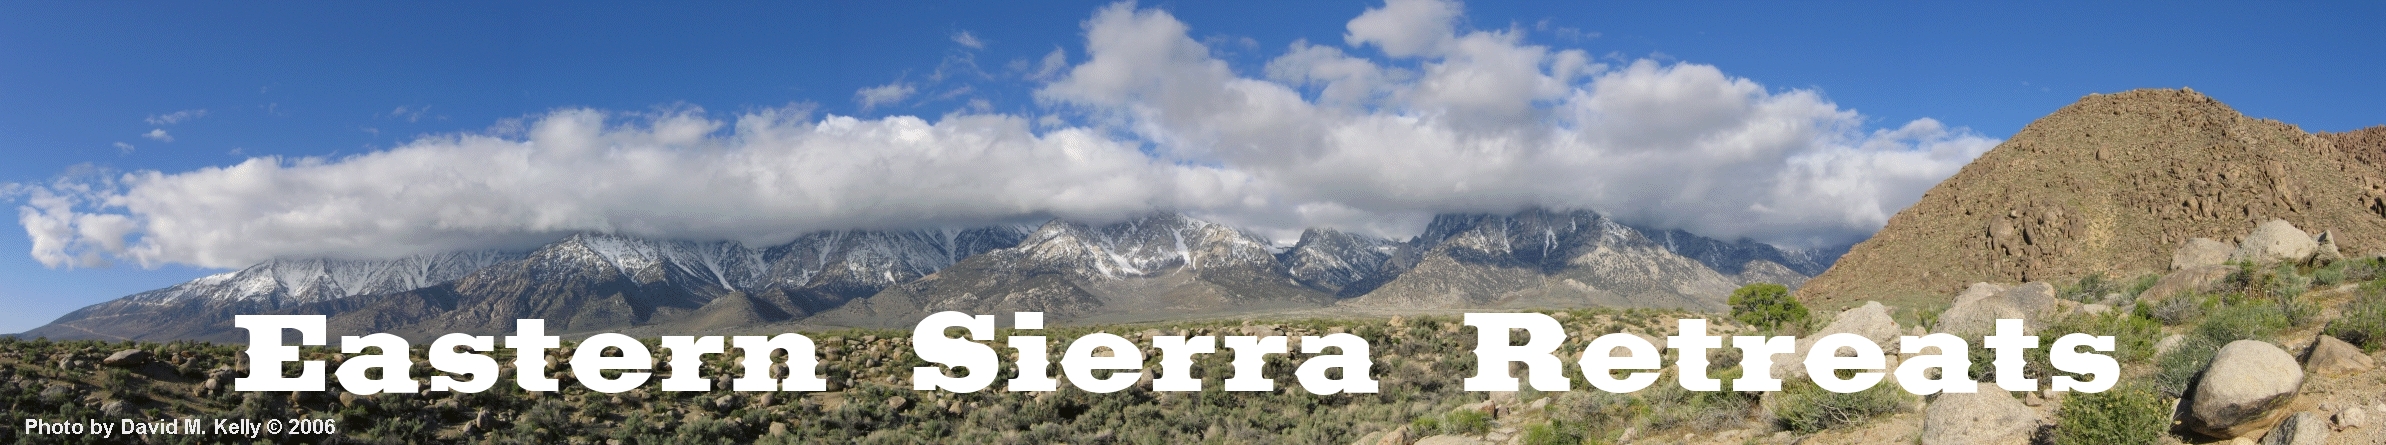 Eastern Sierra Retreats